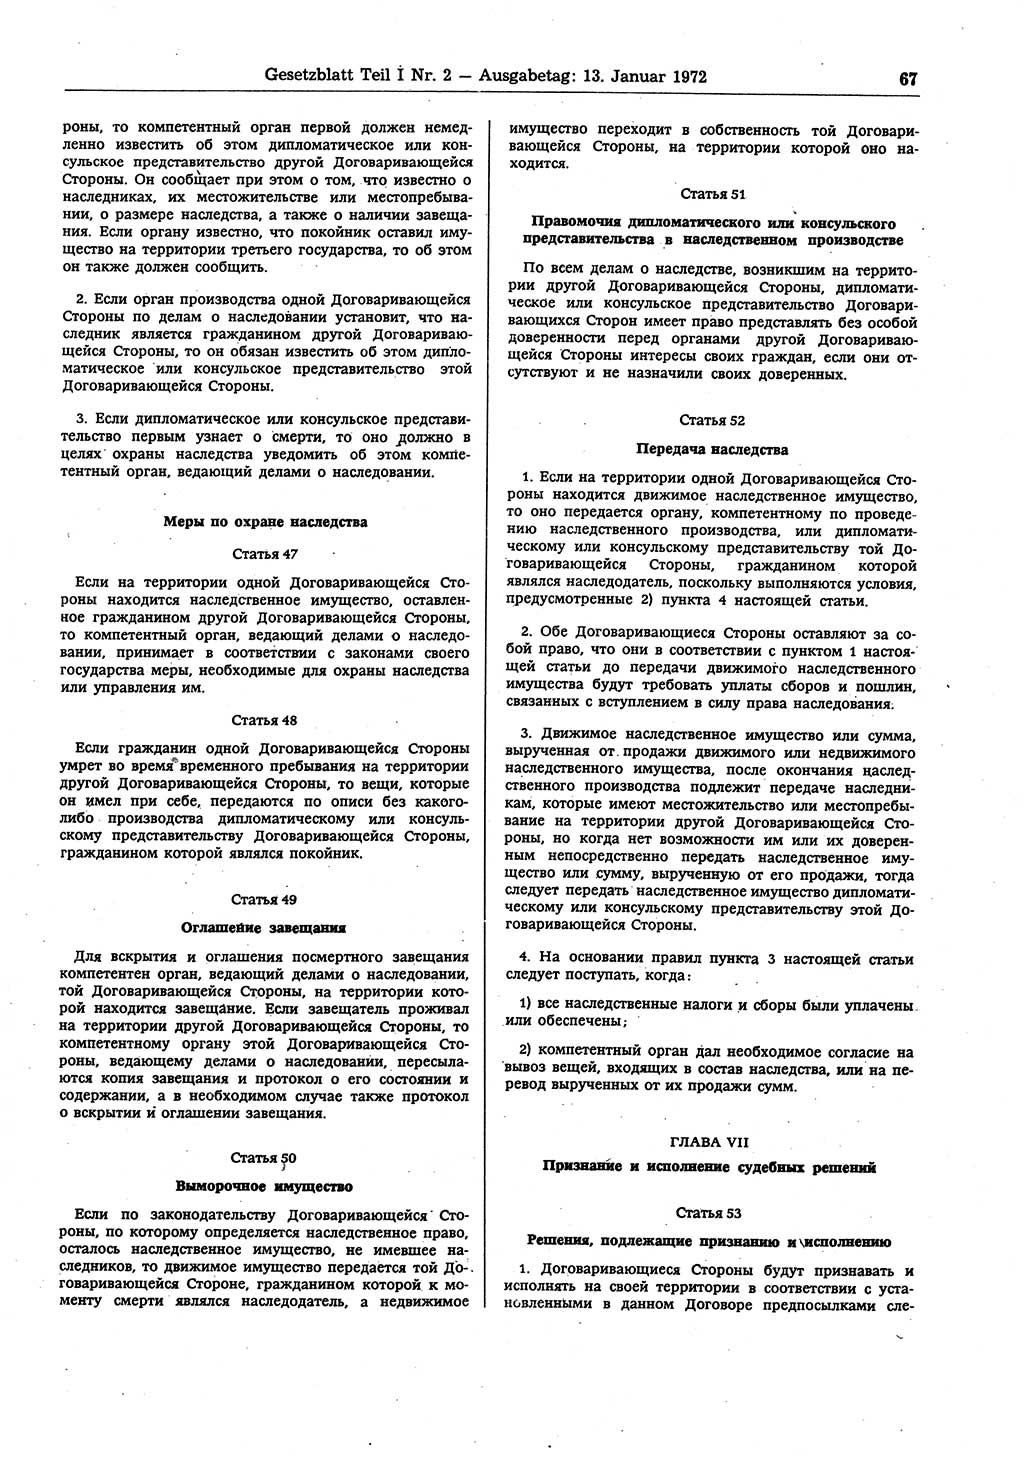 Gesetzblatt (GBl.) der Deutschen Demokratischen Republik (DDR) Teil Ⅰ 1972, Seite 67 (GBl. DDR Ⅰ 1972, S. 67)